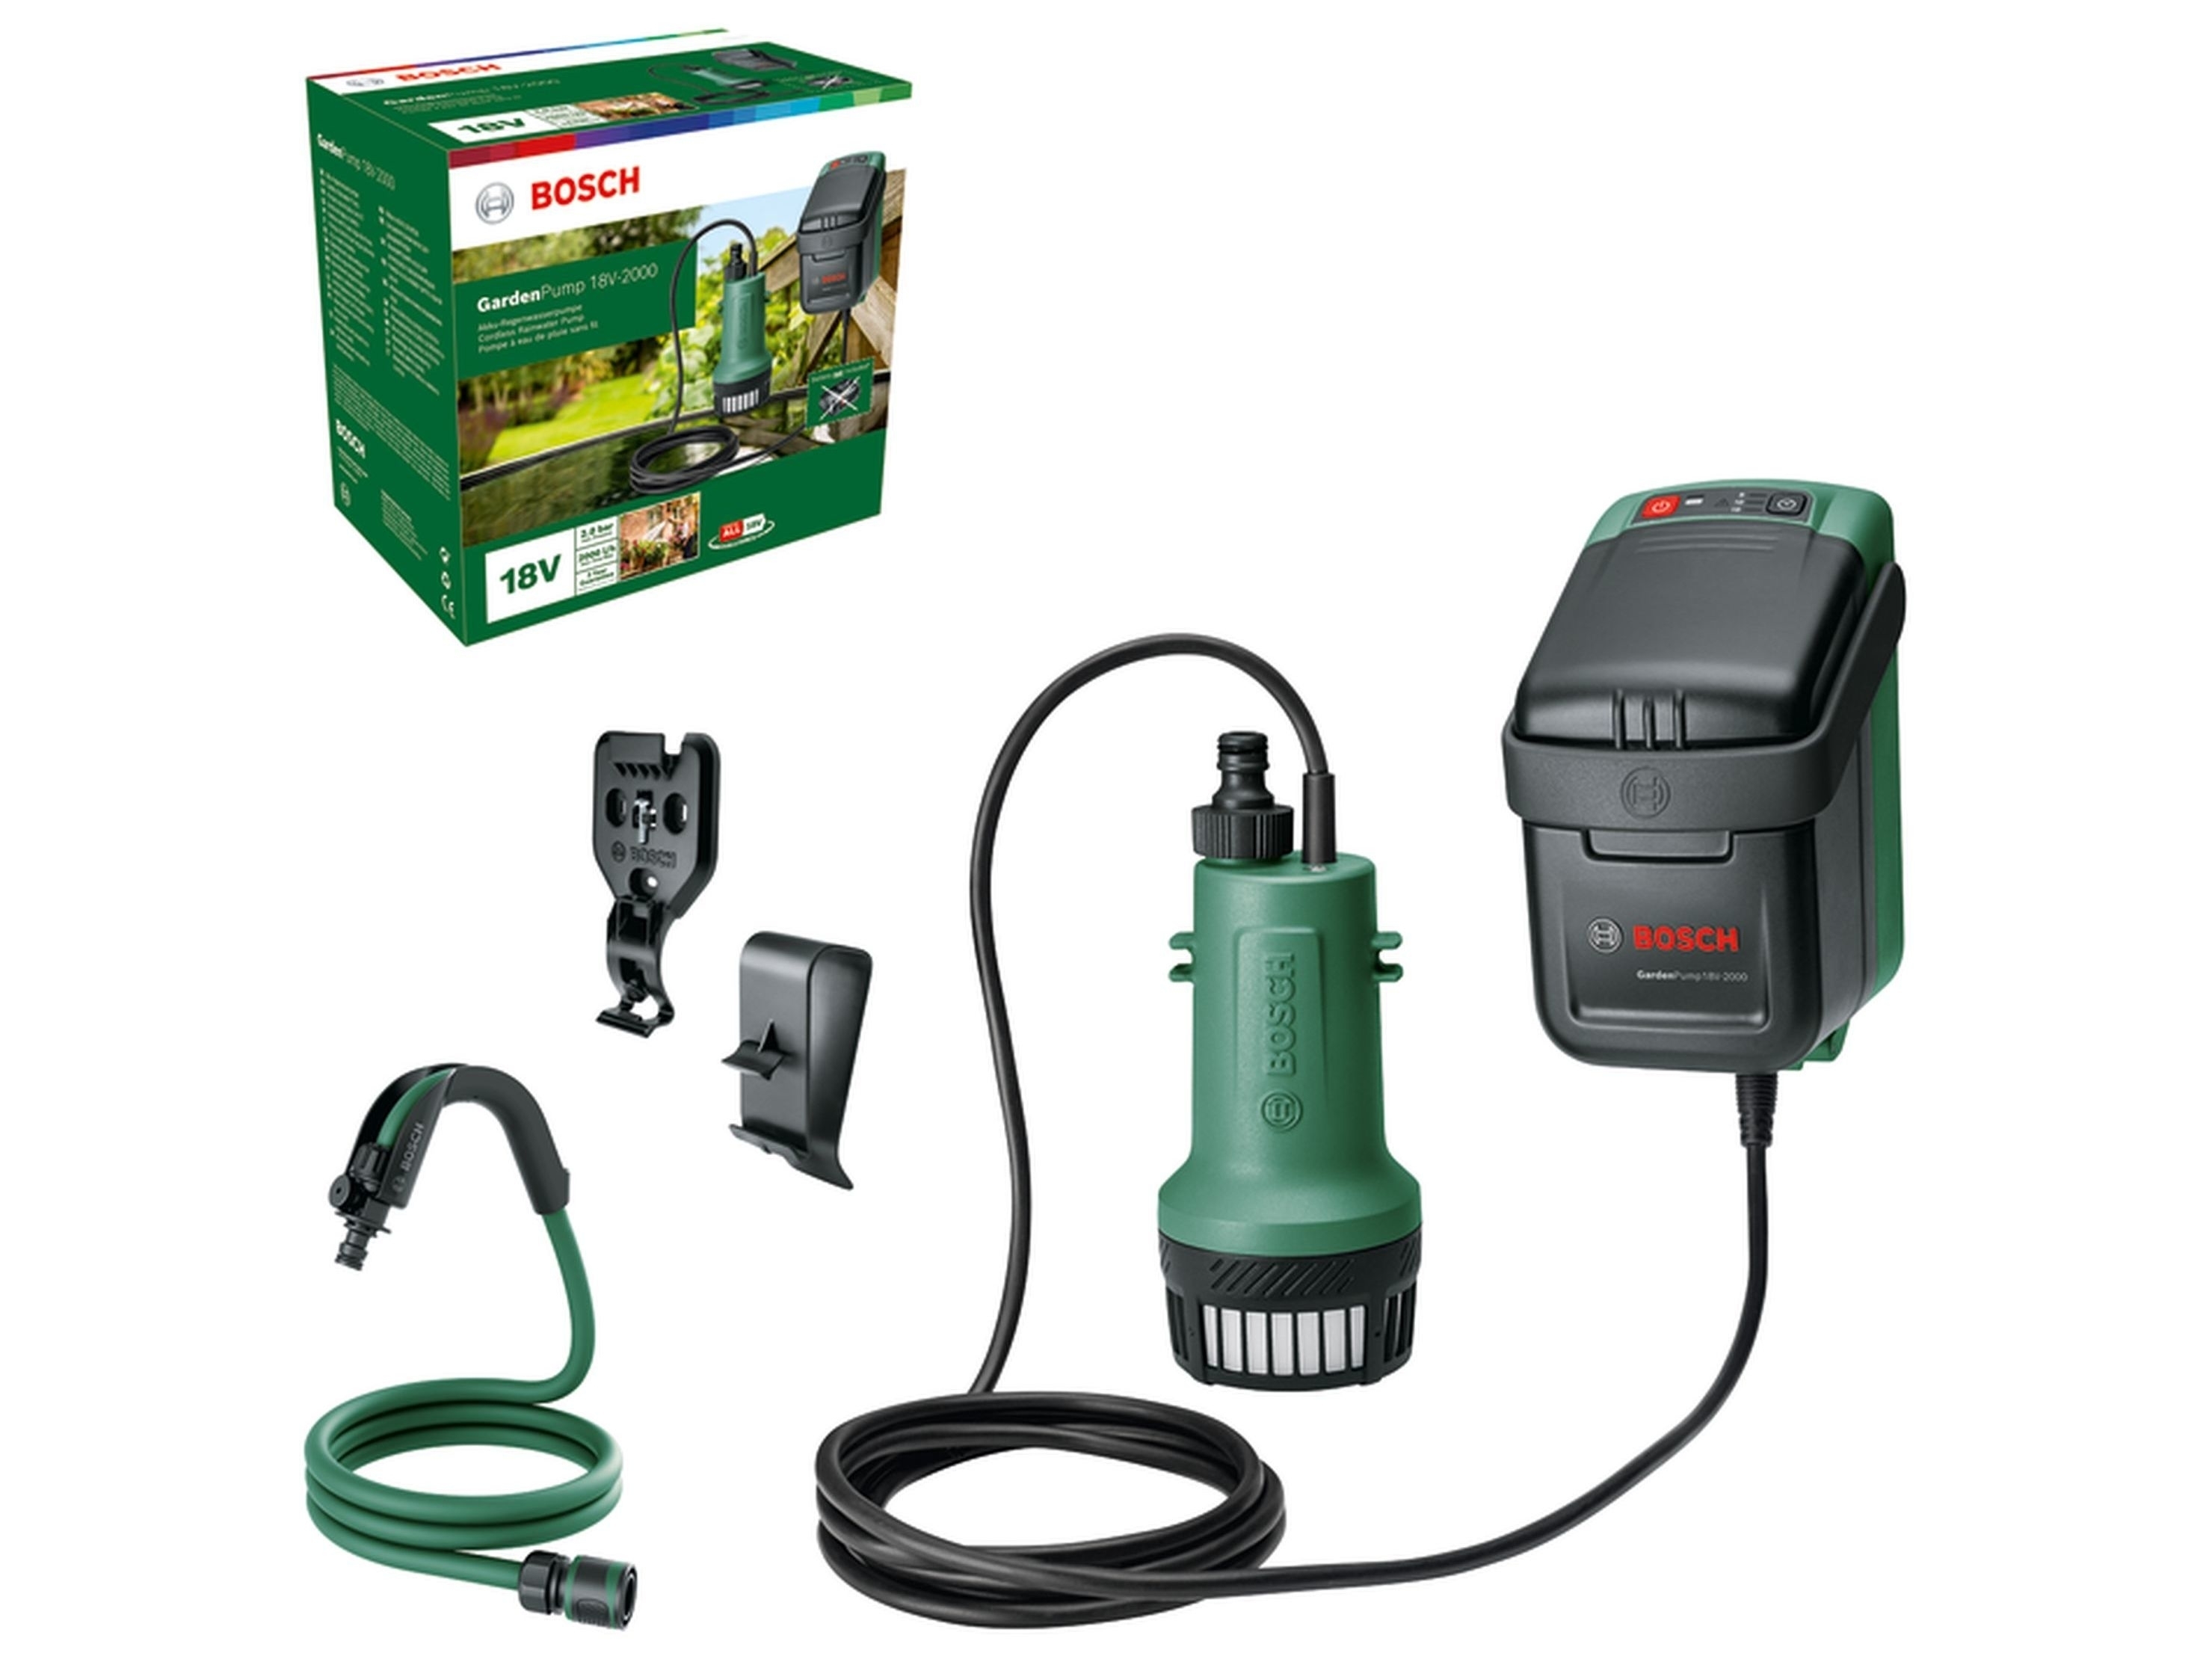 Насос садовый аккумуляторный Bosch Garden Pump 18 (каркас) 06008C4201  купить в Киеве и по Украине, отзывы, характеристики, гар